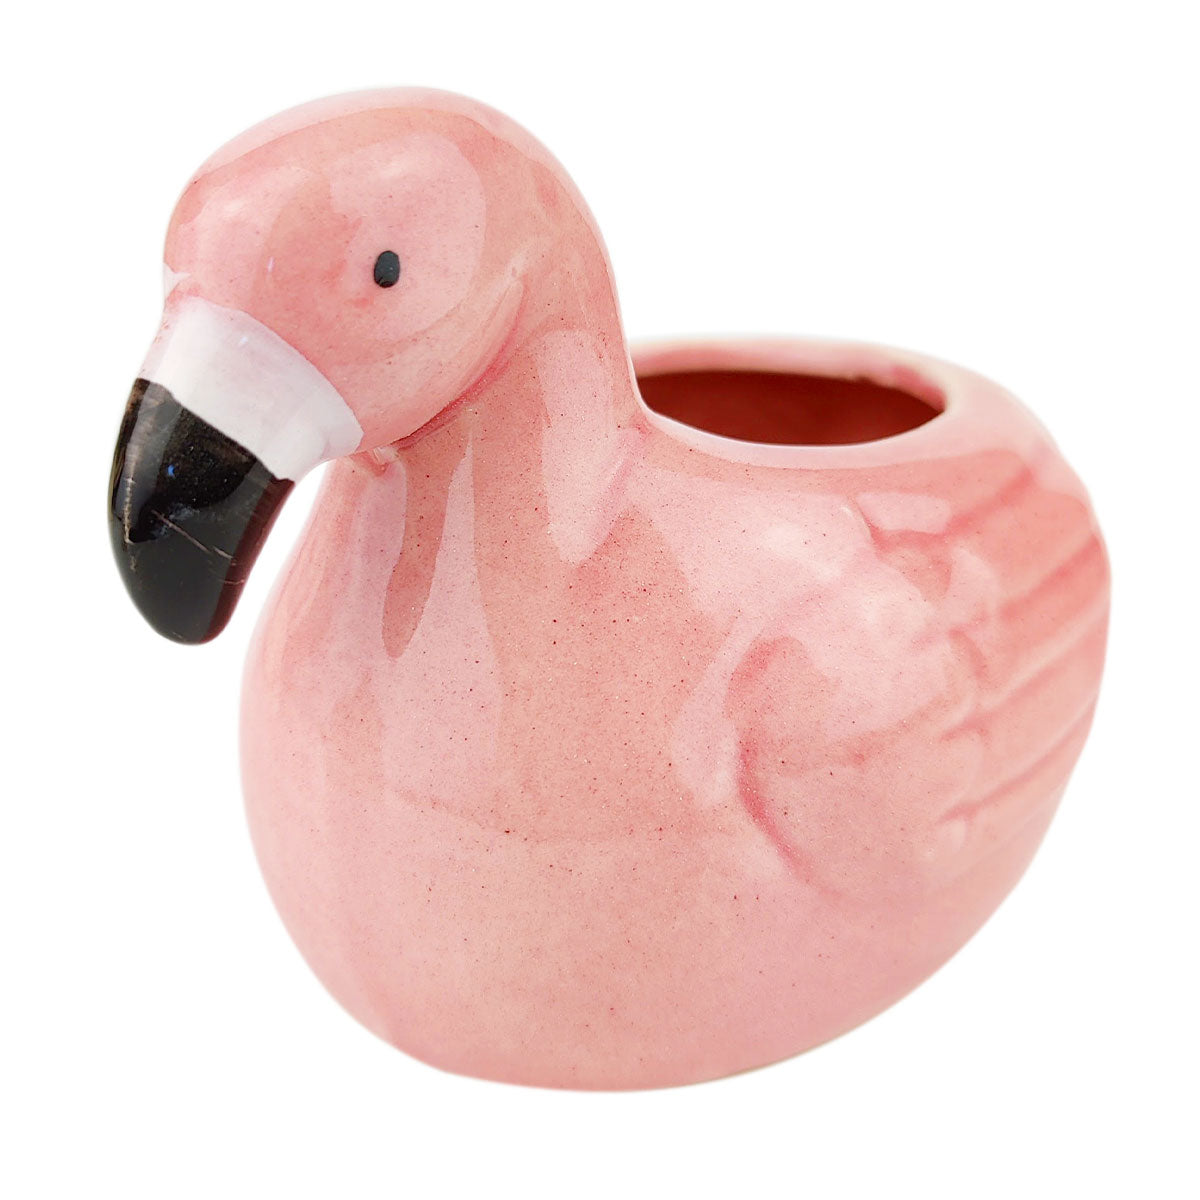 flamingo flower pot, flamingo pot, flamingo planter pot, Ceramic pot, Ceramic flamingo pot, adorable flamingo pot, cute flamingo pot, cute pot, animal pot for succulents, small succulents and cactus pot